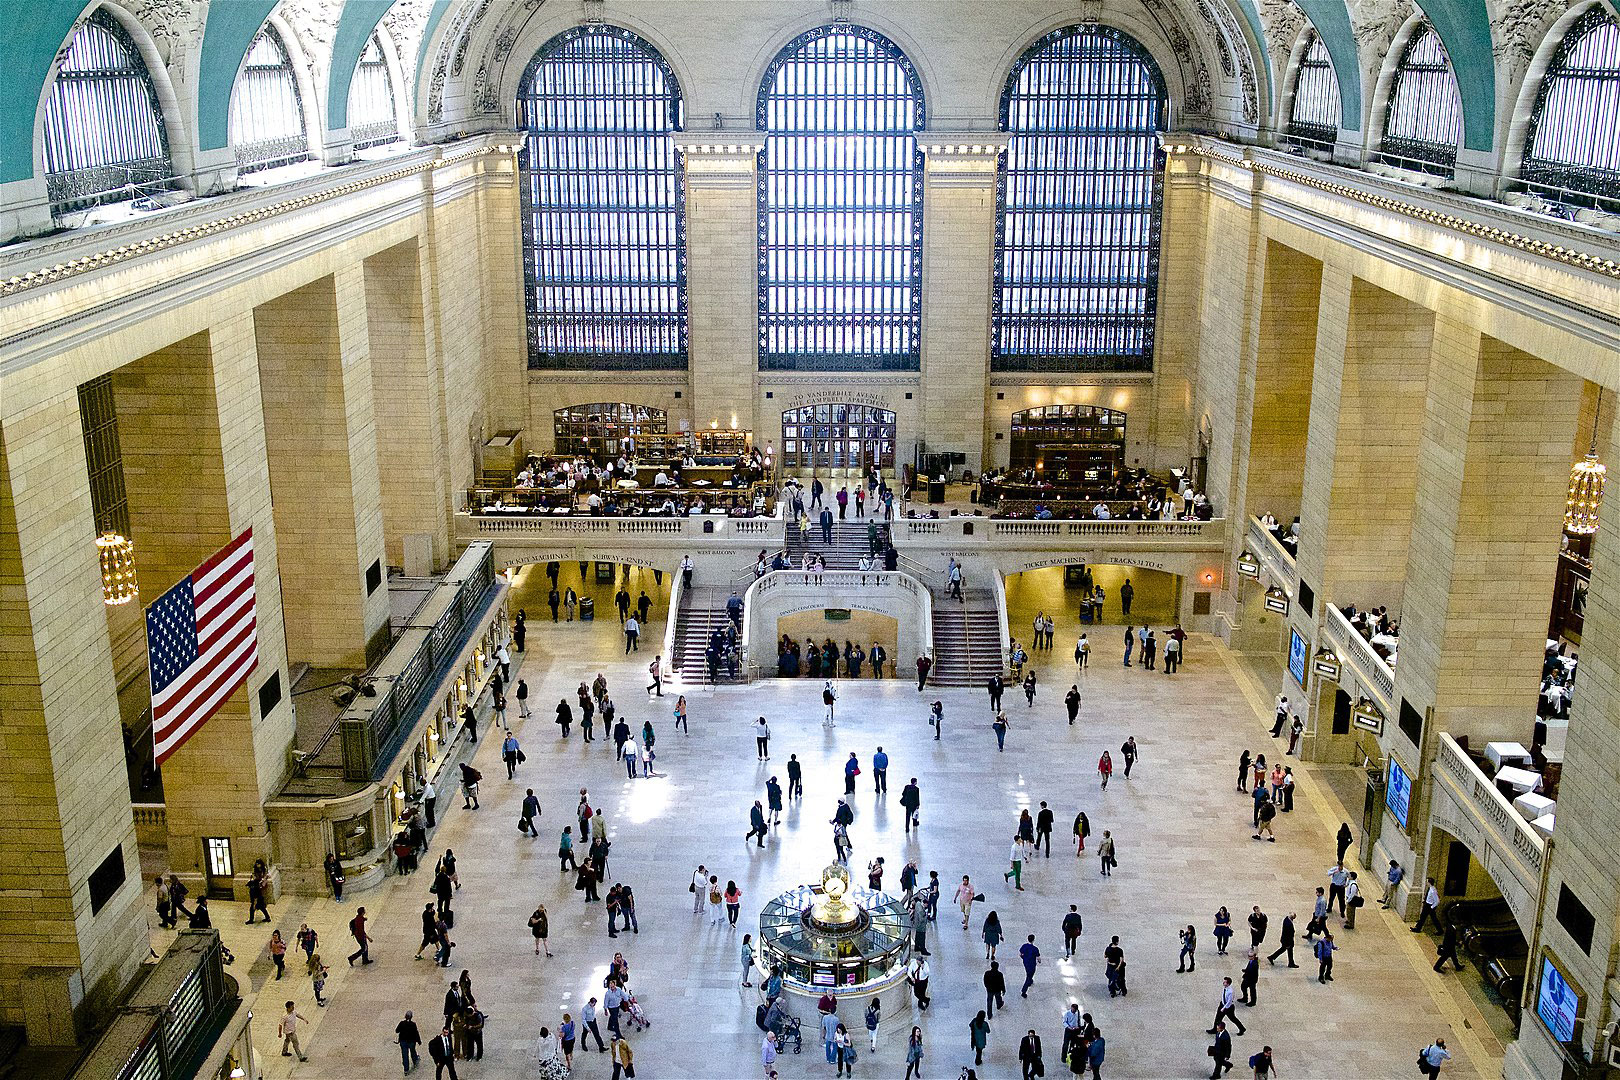 Le hall principal de Grand Central Terminal, à New York (USA). Le bâtiment, sur sept niveaux, accueille 800 trains par jour sur 63 voies et abrite 35 restaurants. Le plafond du hall principal, qui s'élève à 38 mètres, est recouvert de peintures représentant 2500 étoiles.